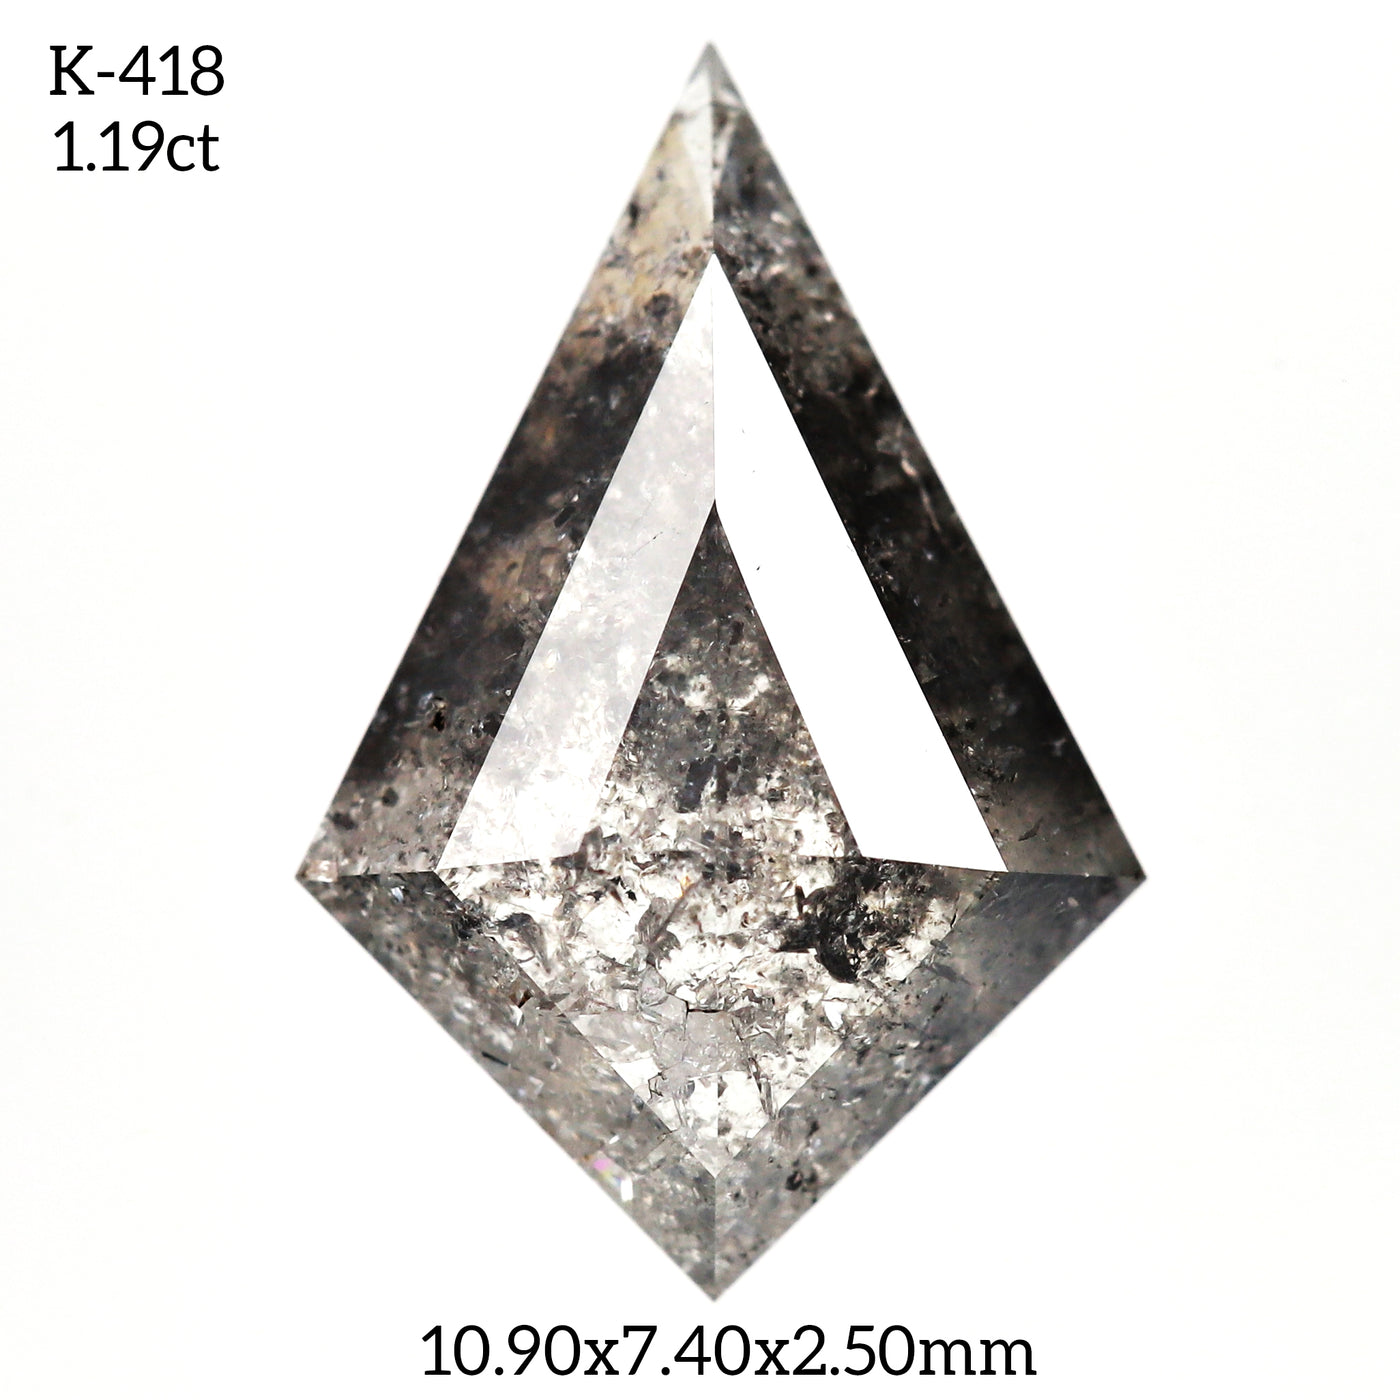 K418 - Salt and pepper kite diamond